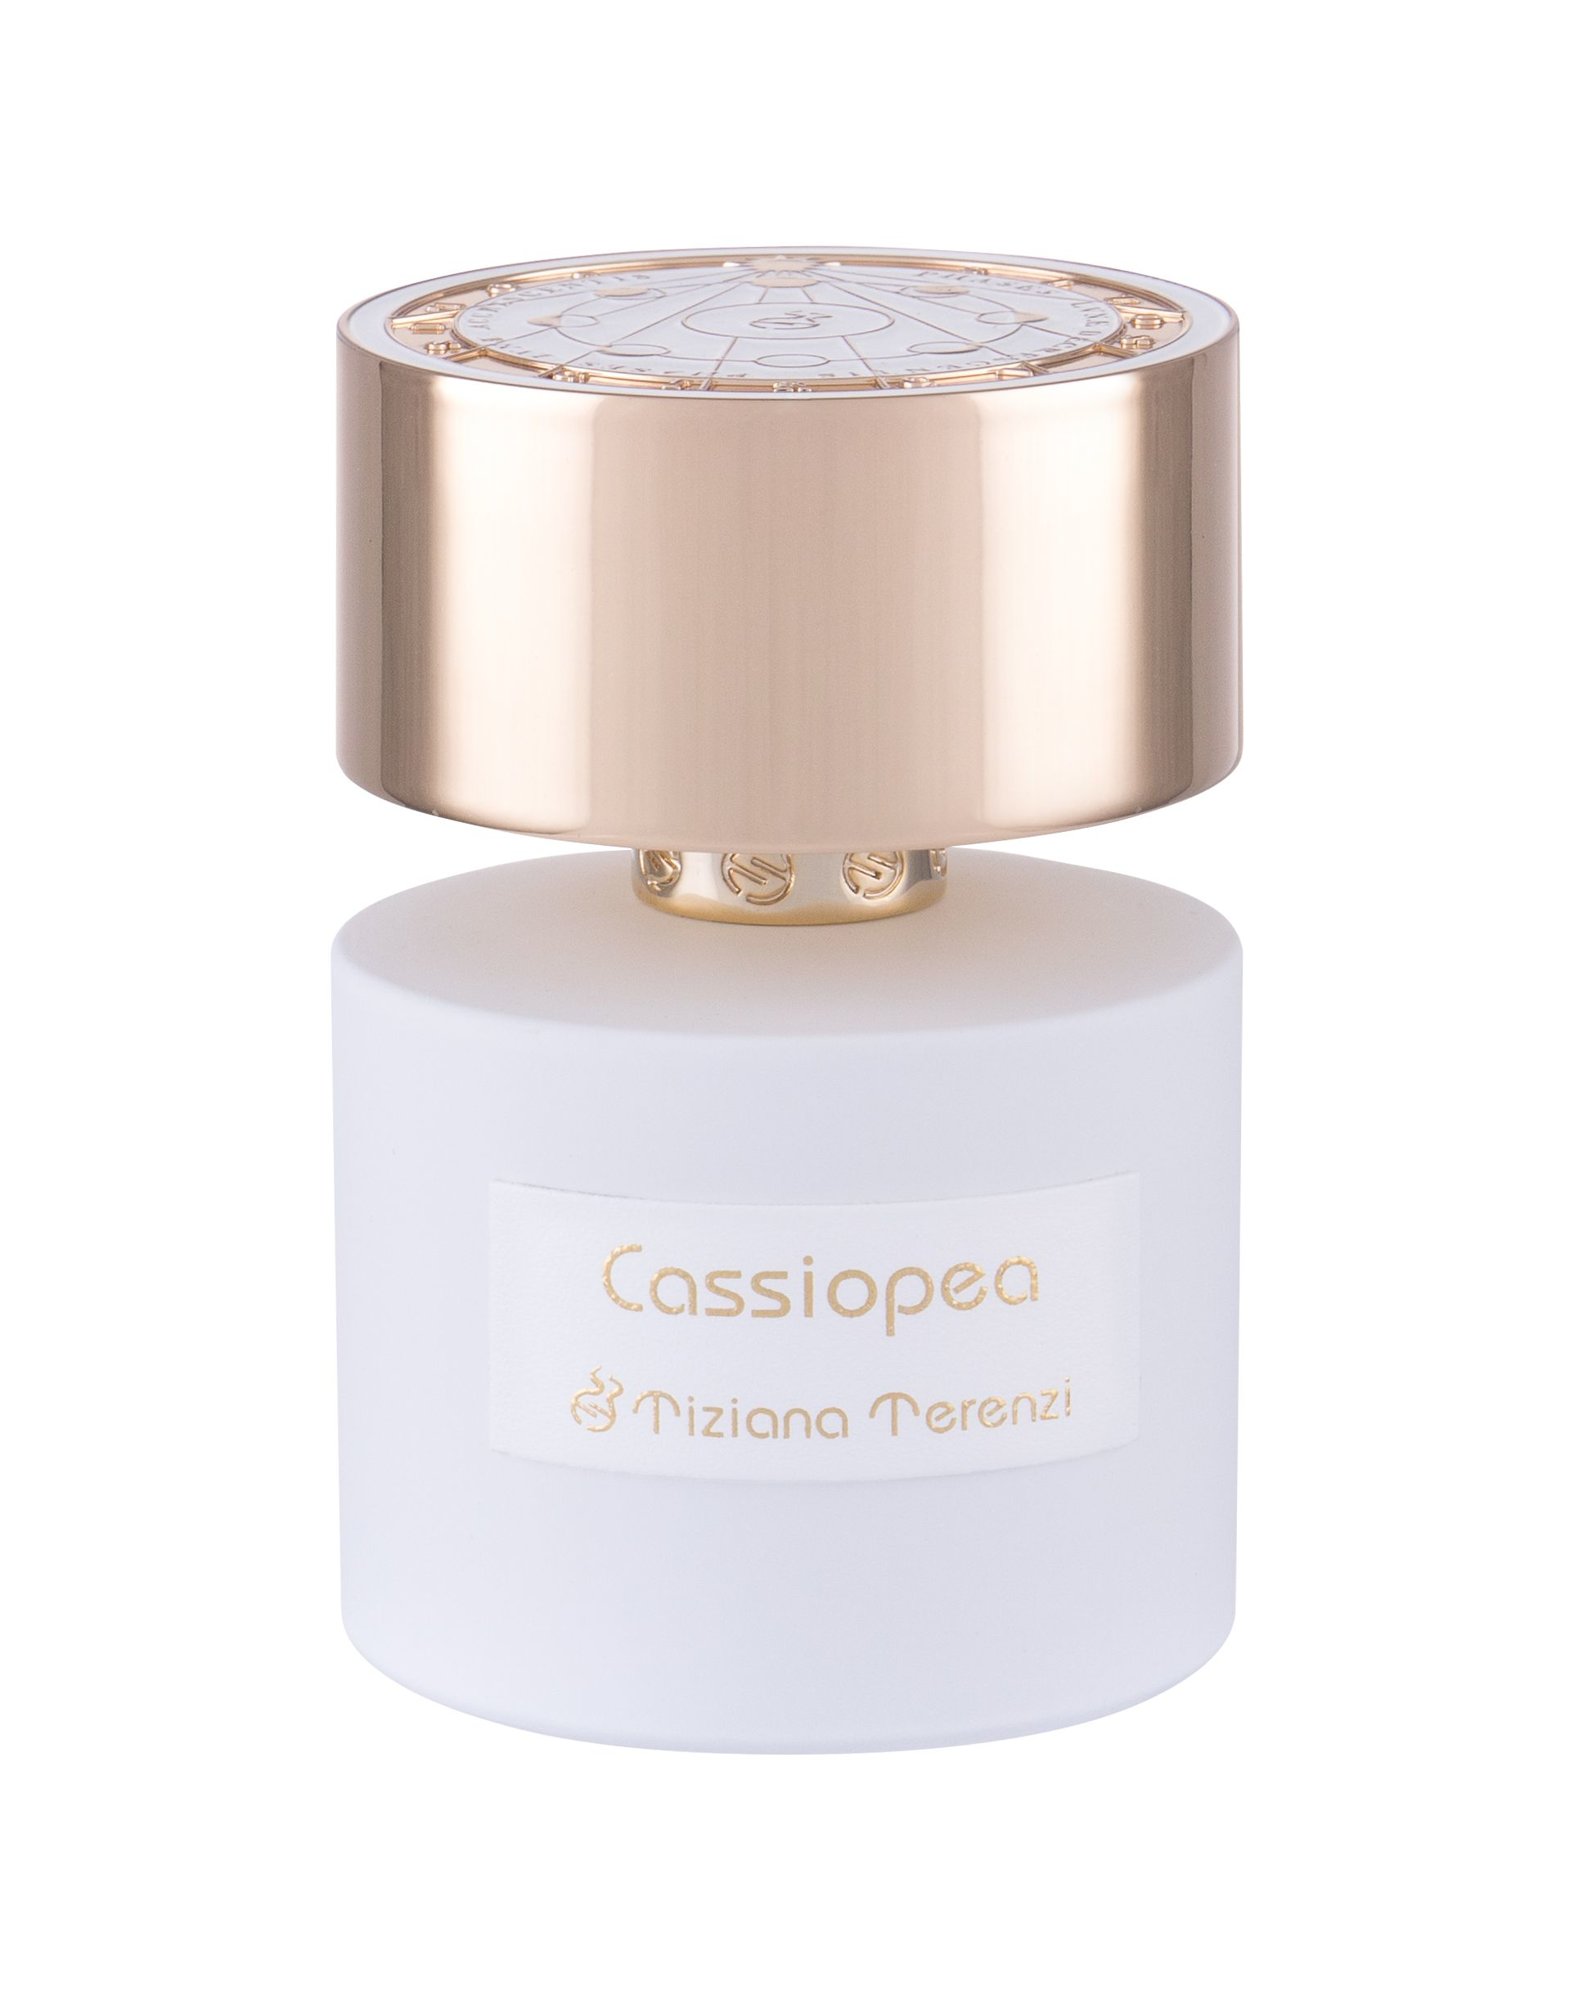 Tiziana Terenzi Cassiopea 15 ml NIŠINIAI kvepalų mėginukas (atomaizeris) Unisex Parfum